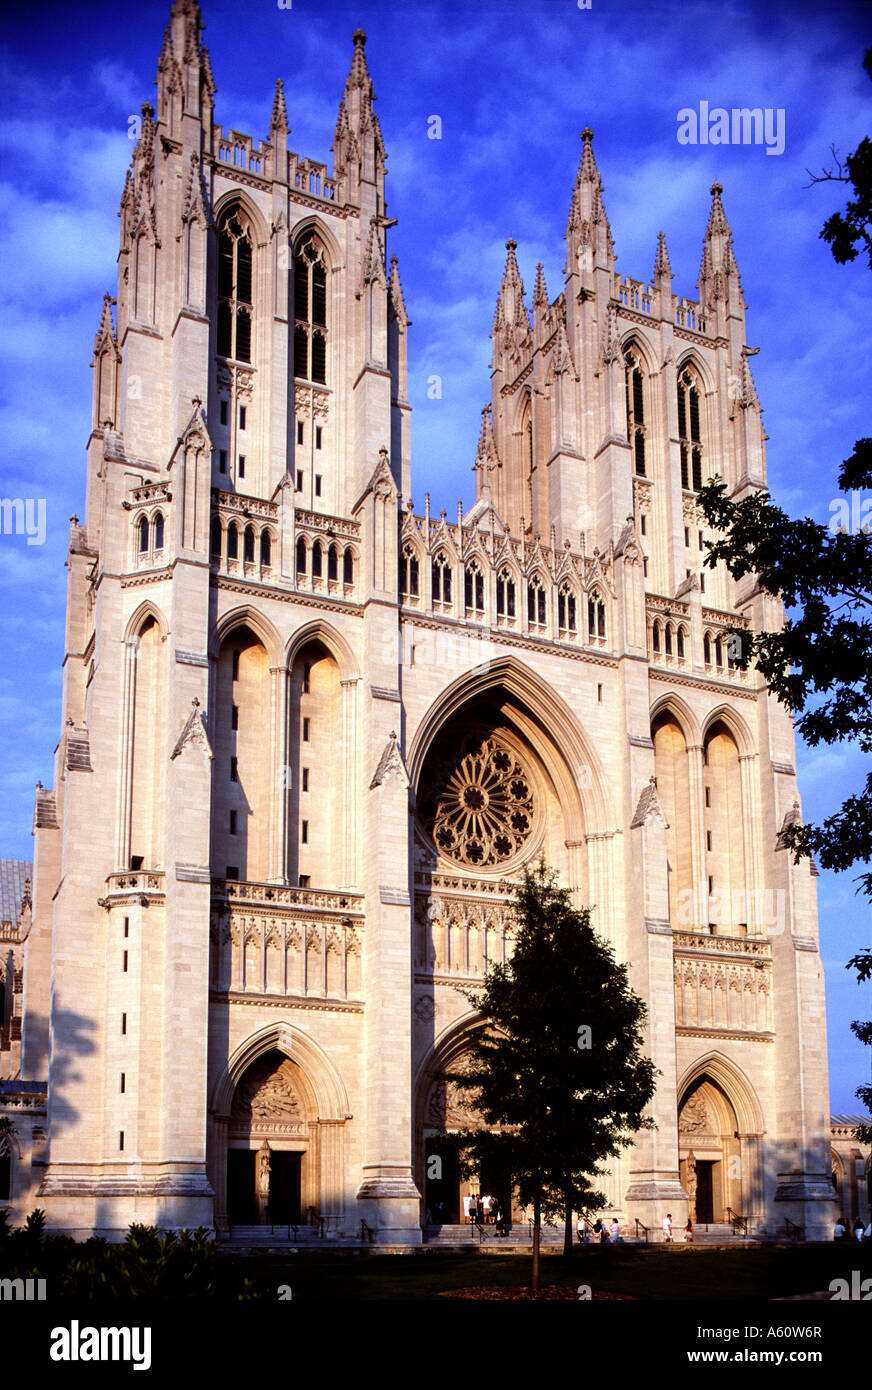 Washington National Cathedral, Washington D.C. Stock Photo